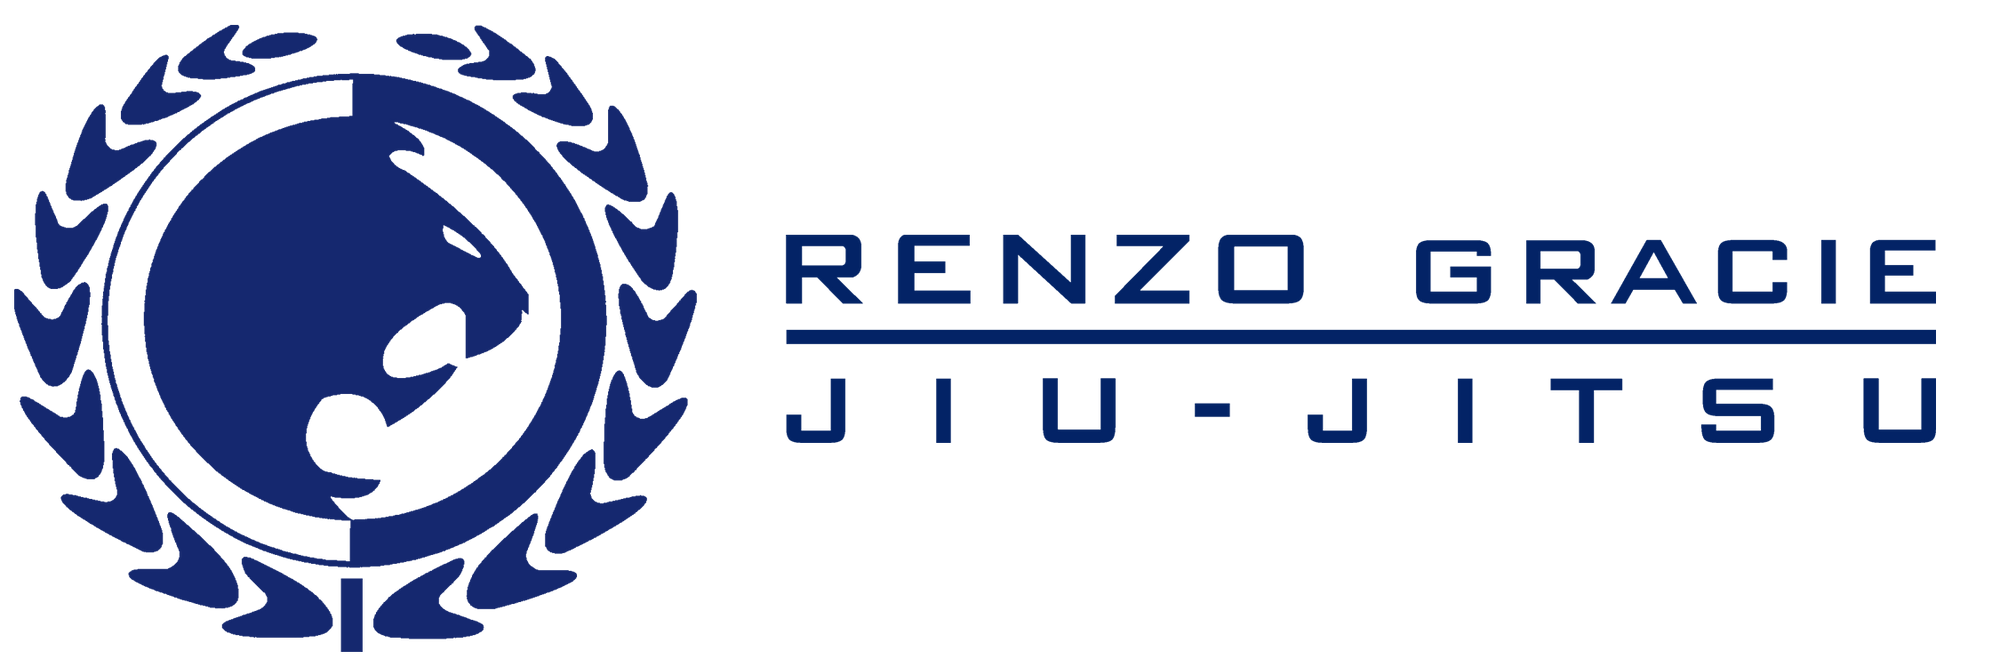 Renzo Gracie Jiu-Jitsu Logo